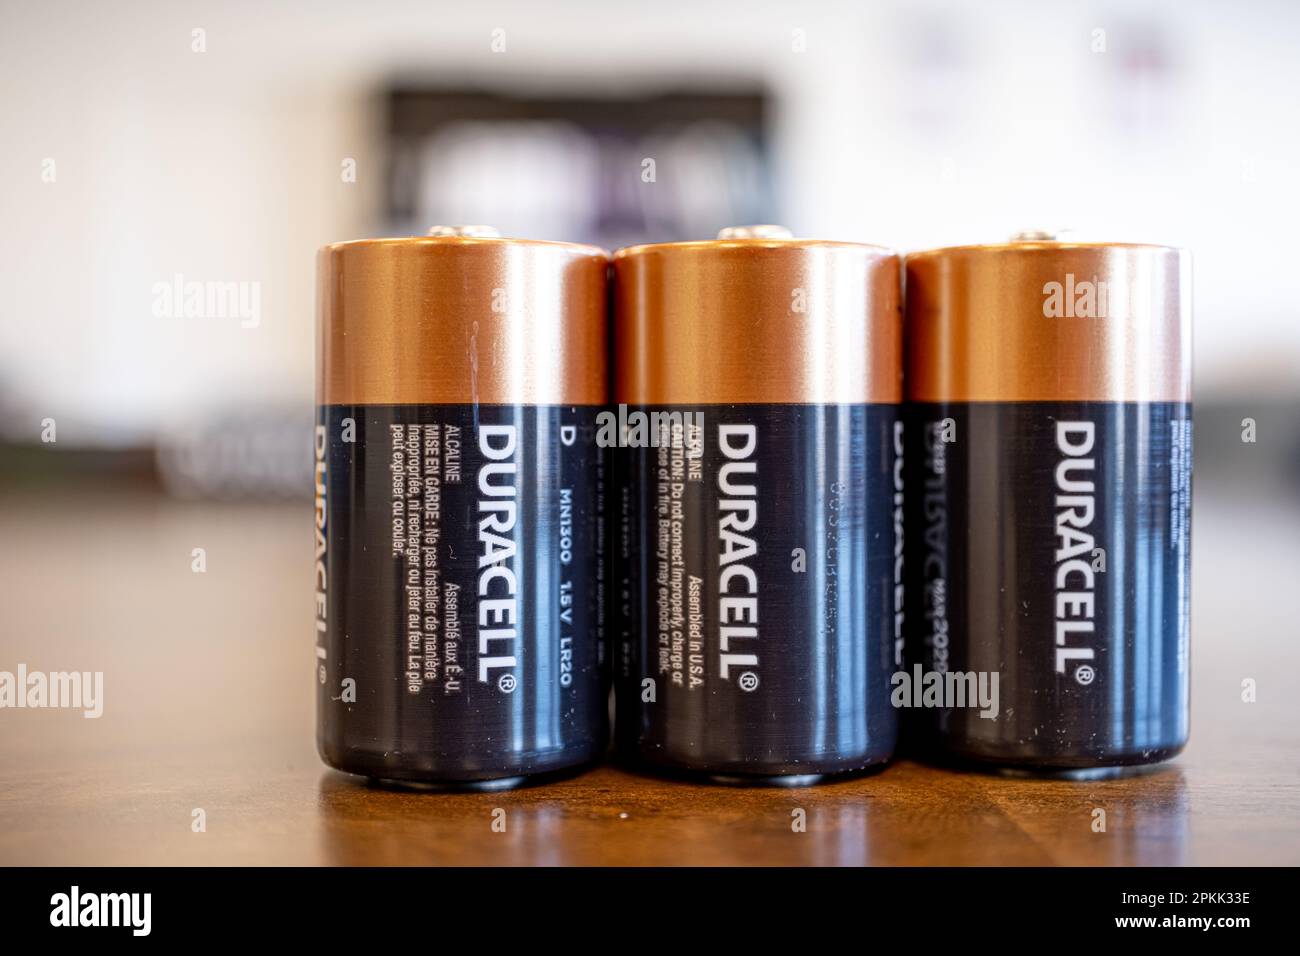 12 x Duracell D Coppertop Duralock Alkaline Flashlight Size D Cell LR20  Battery